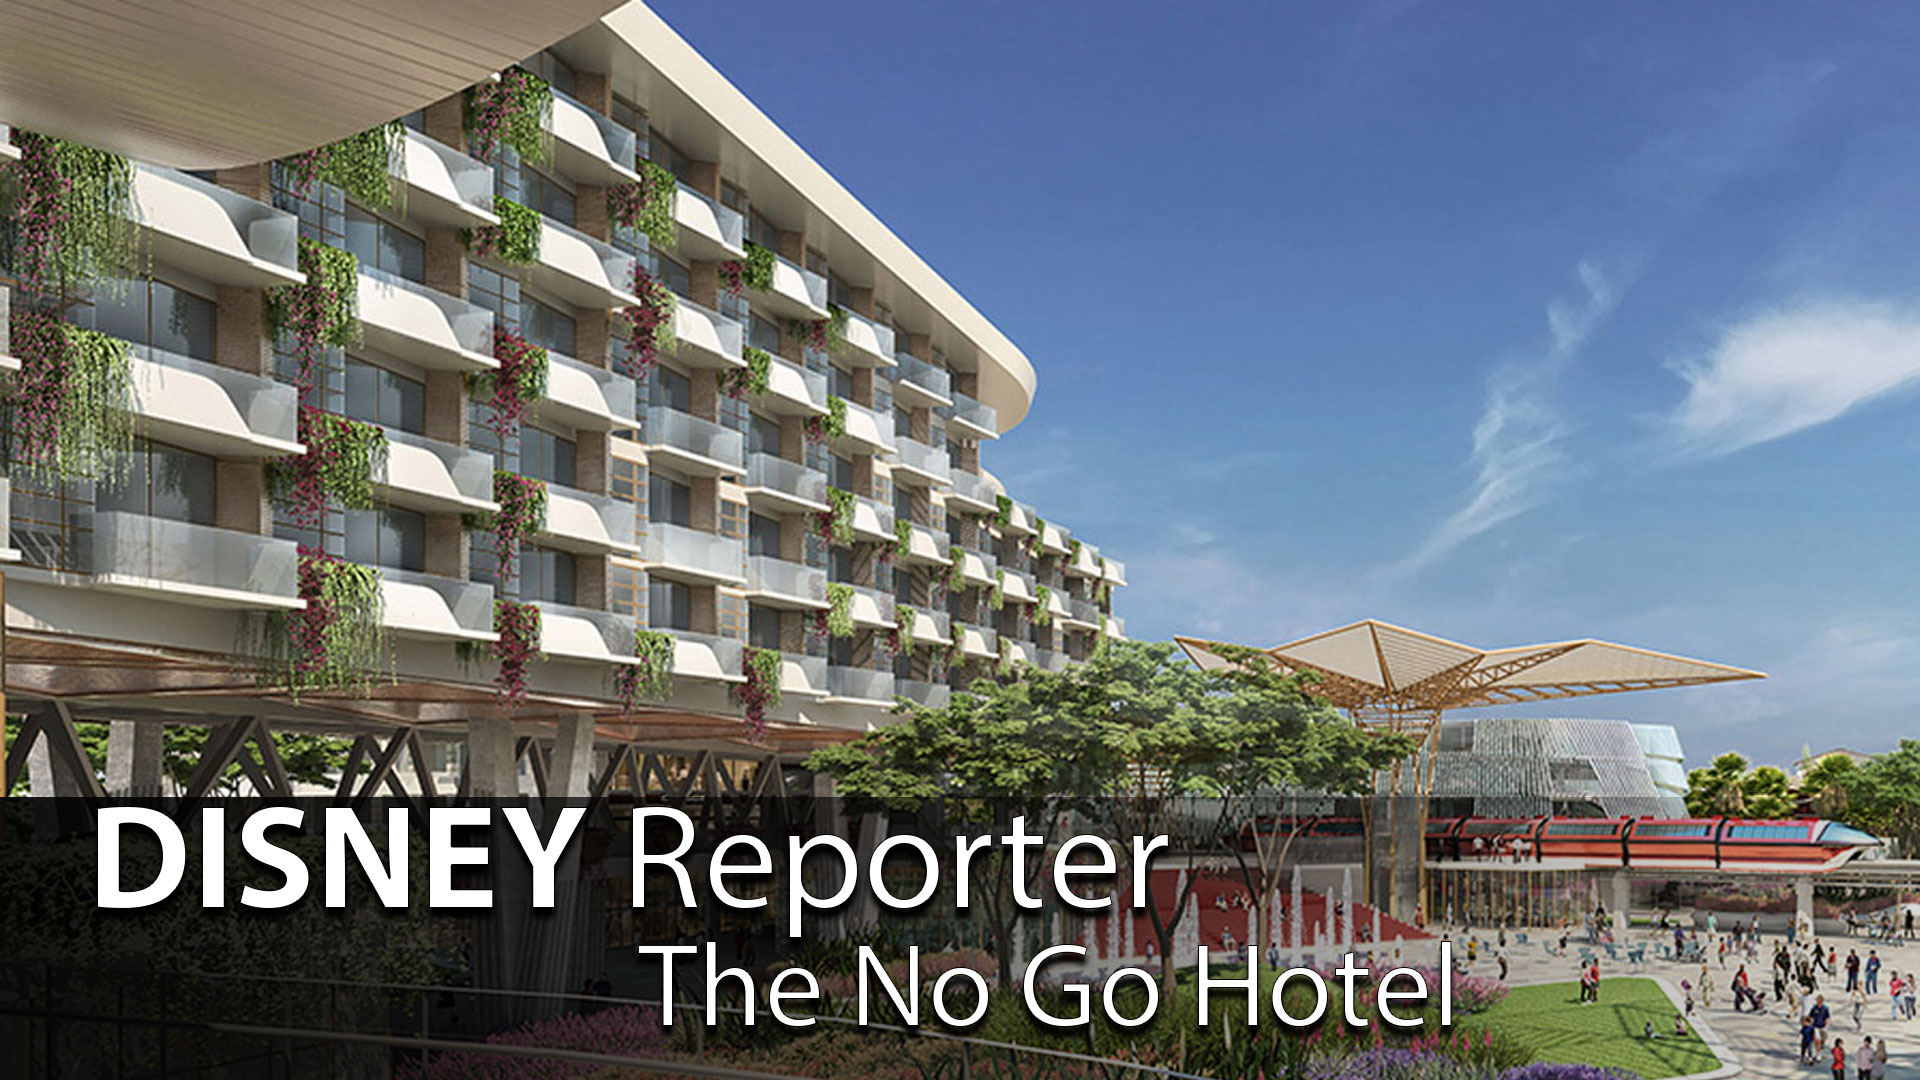 The No Go Hotel - DISNEY Reporter